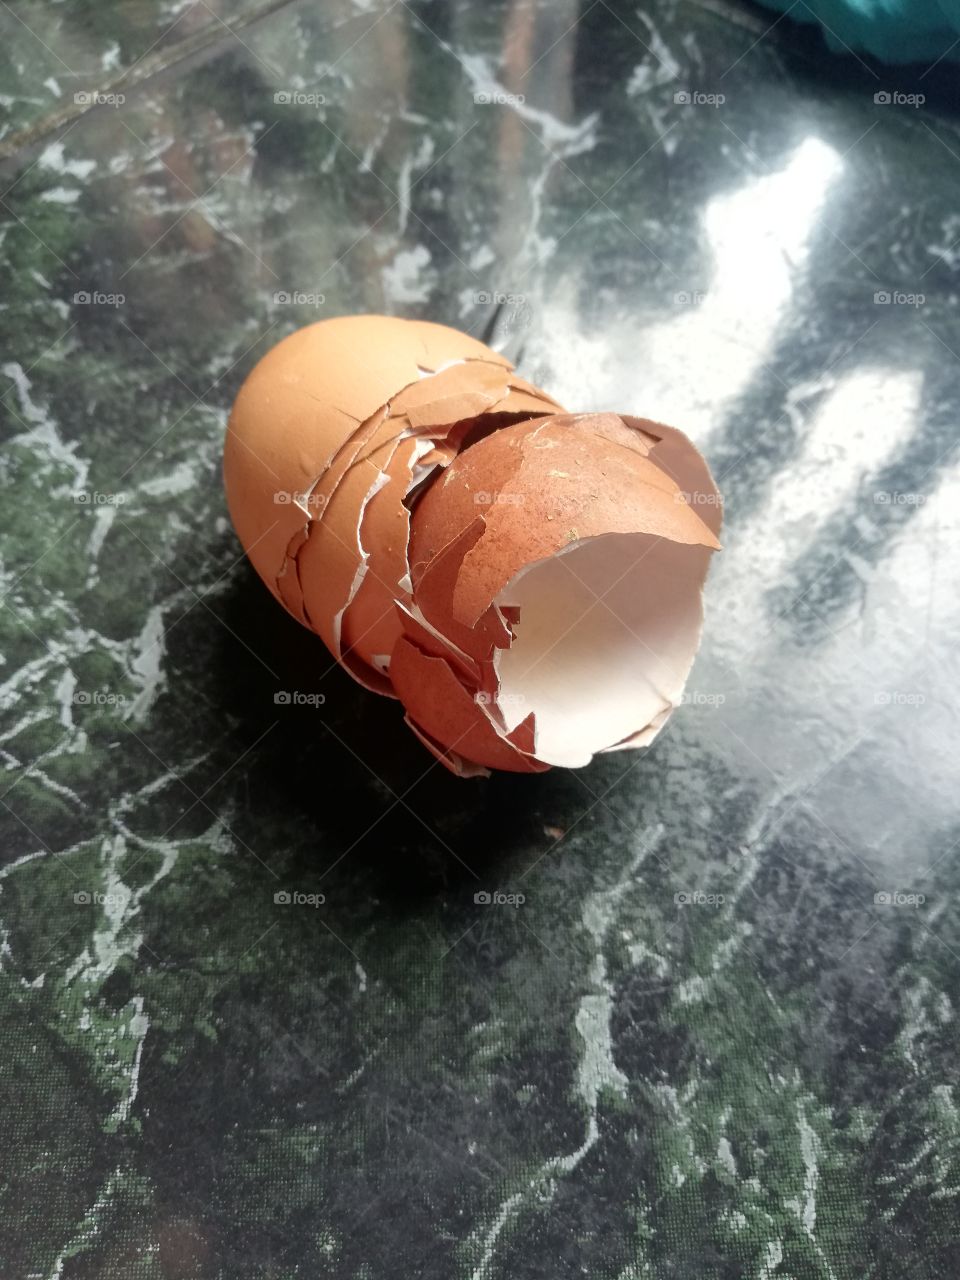 Yemas de huevos. Después de haber cocinado un desauyo nutritivo pude obtener esta peculiar fotografía de las yemas de huevos.